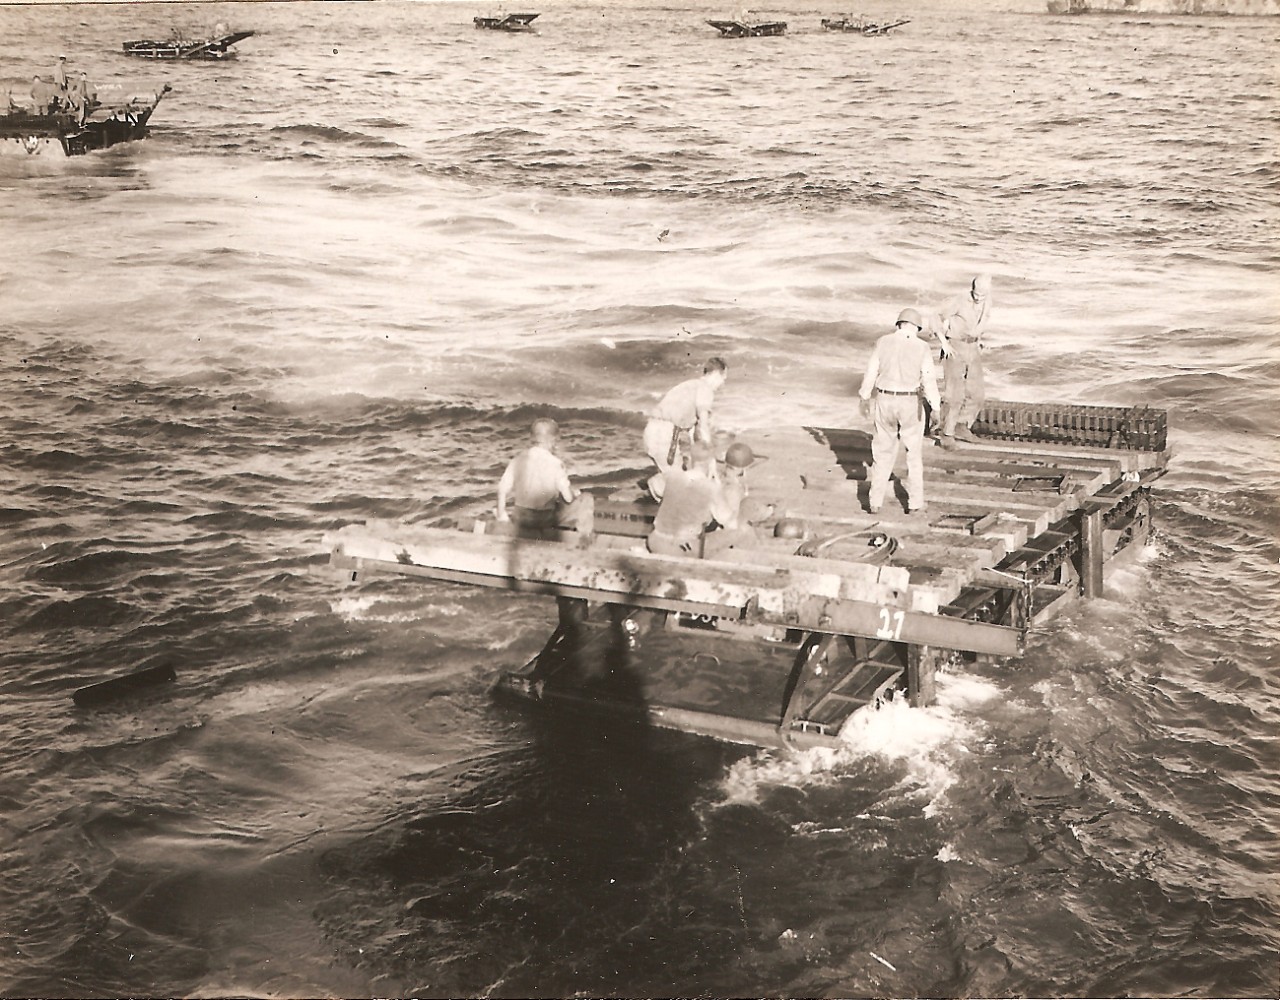 <p>Doodlebug during testing on Saipan, 1944.</p>
